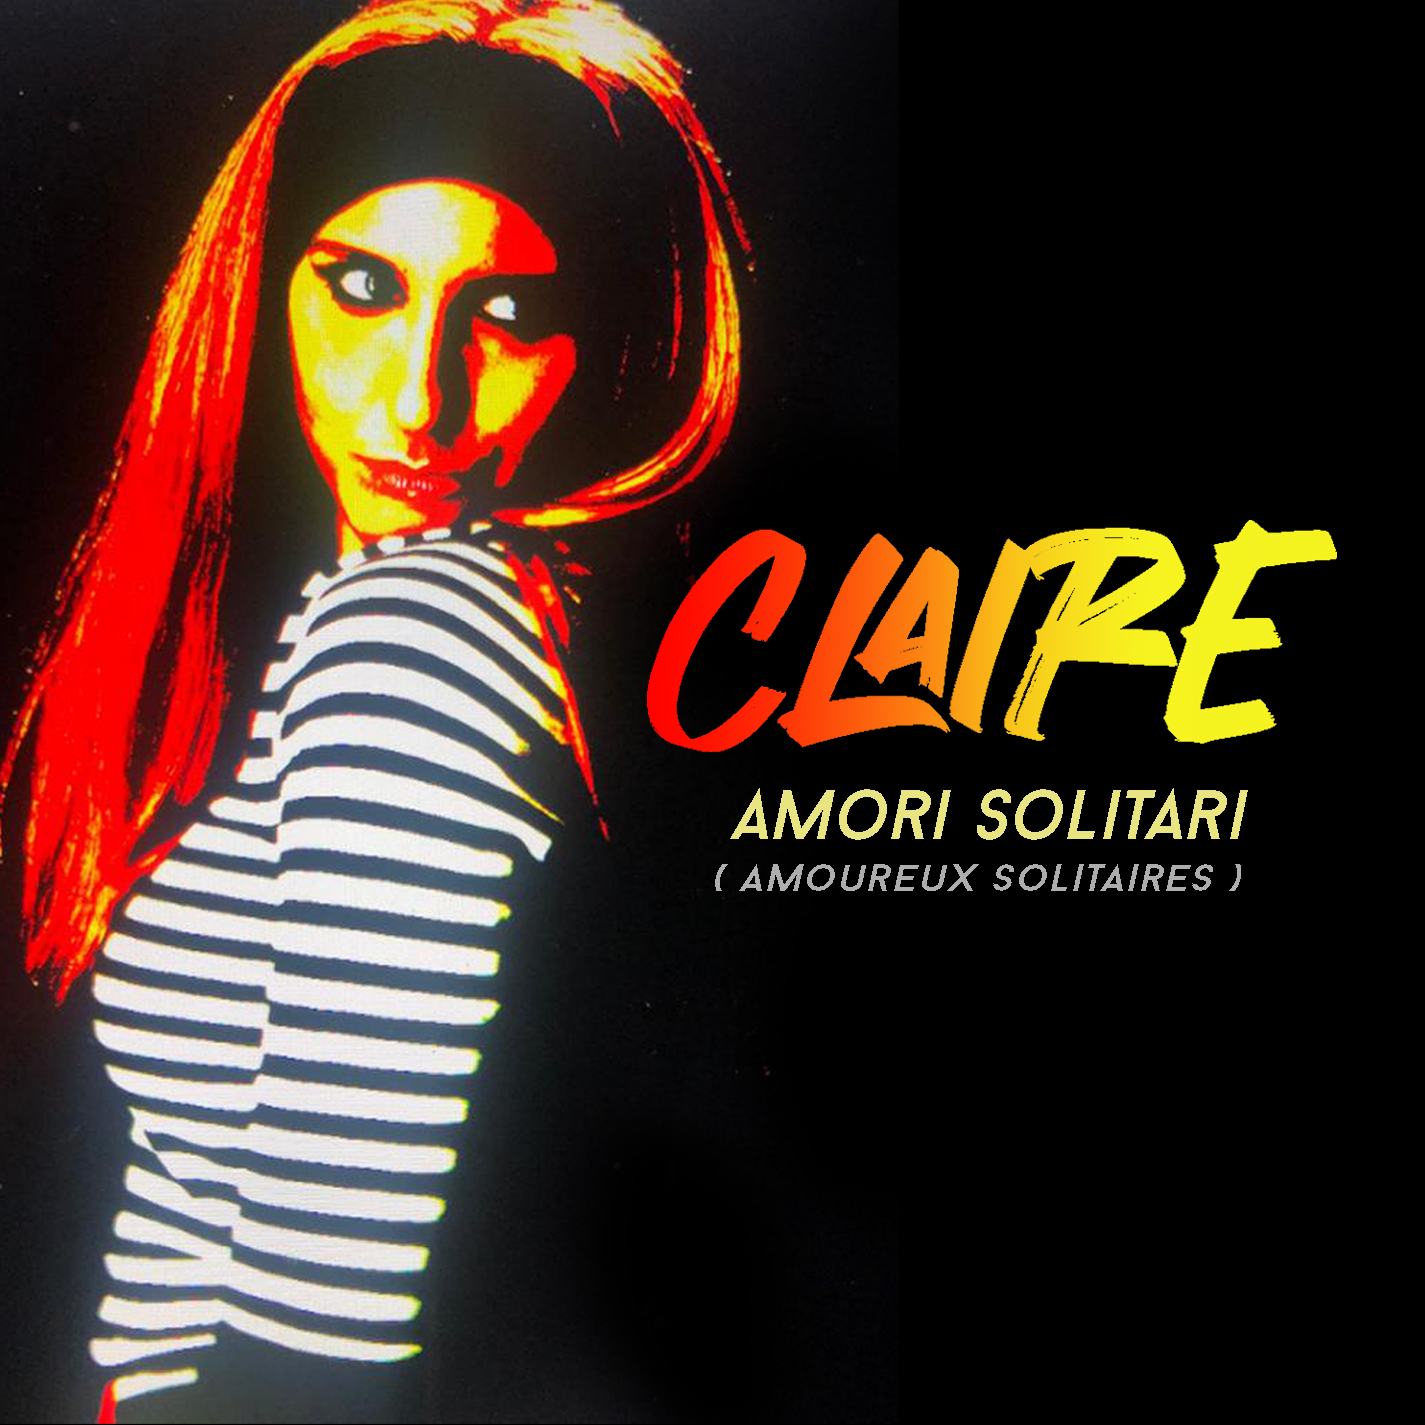 Claire - Amori solitari